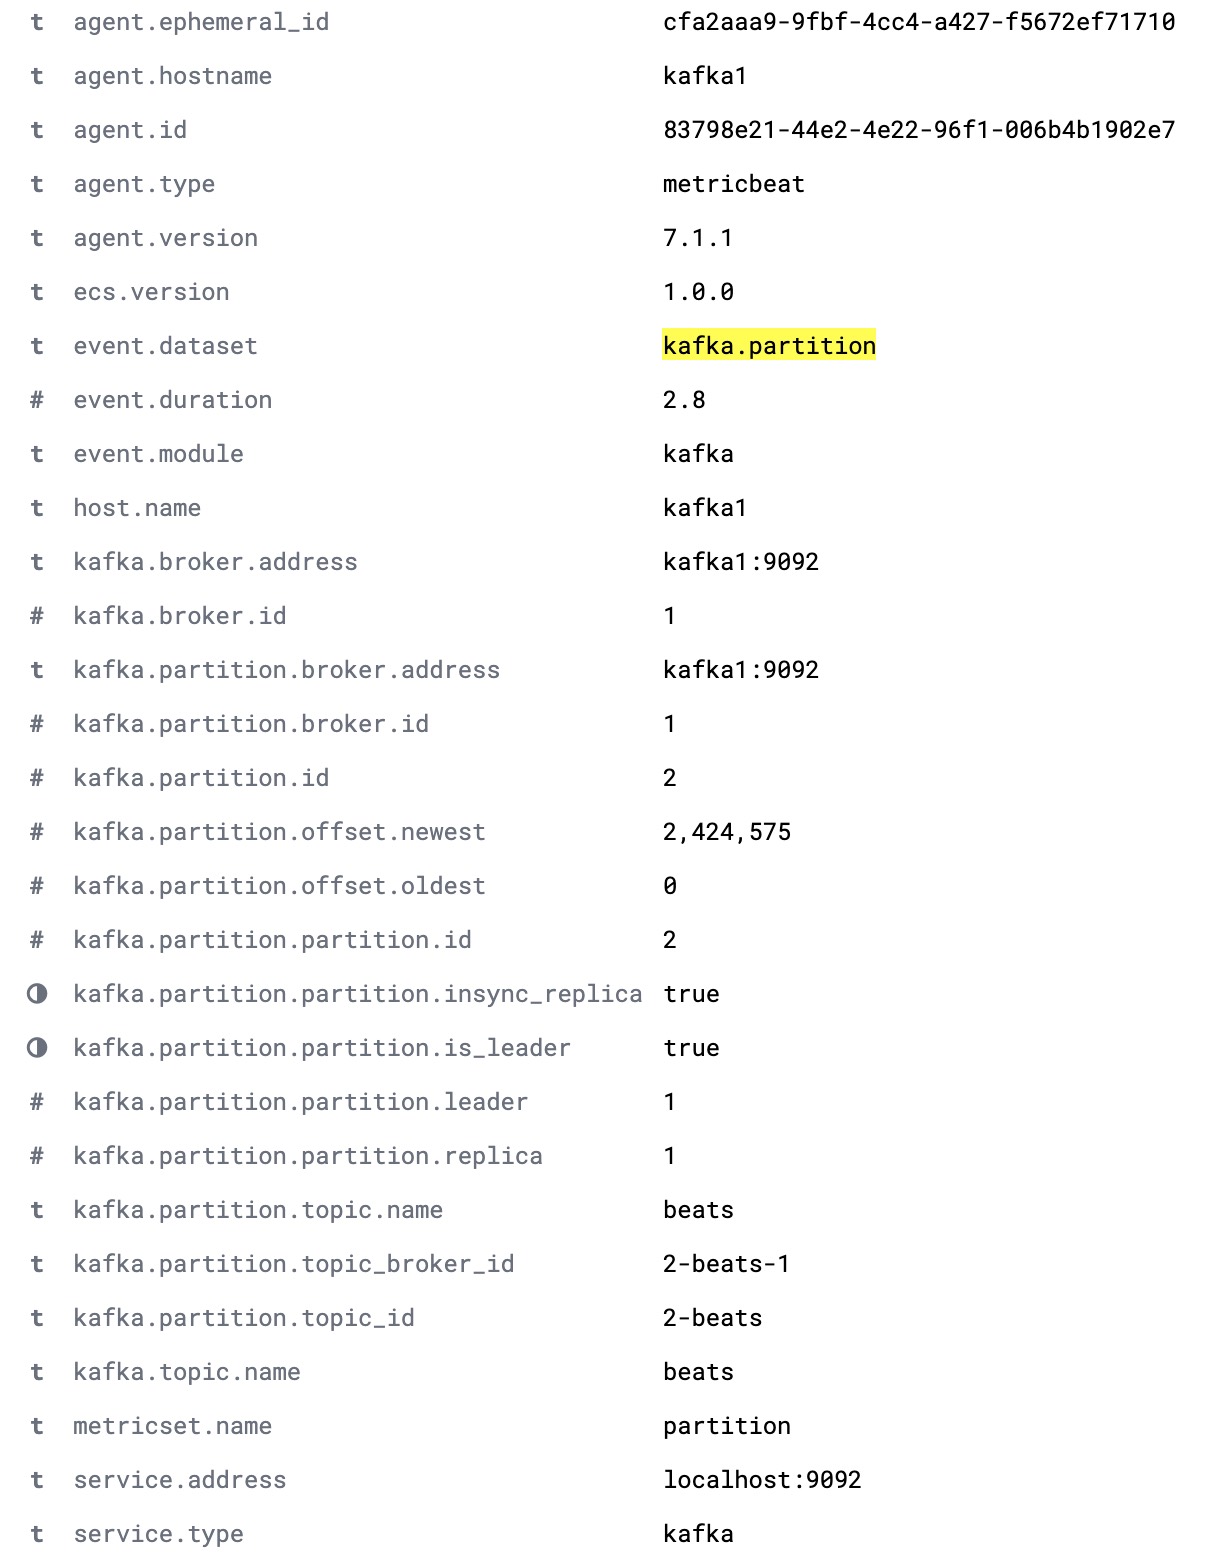 Documento completo de kafka.partition con todos los detalles de las particiones en un cluster